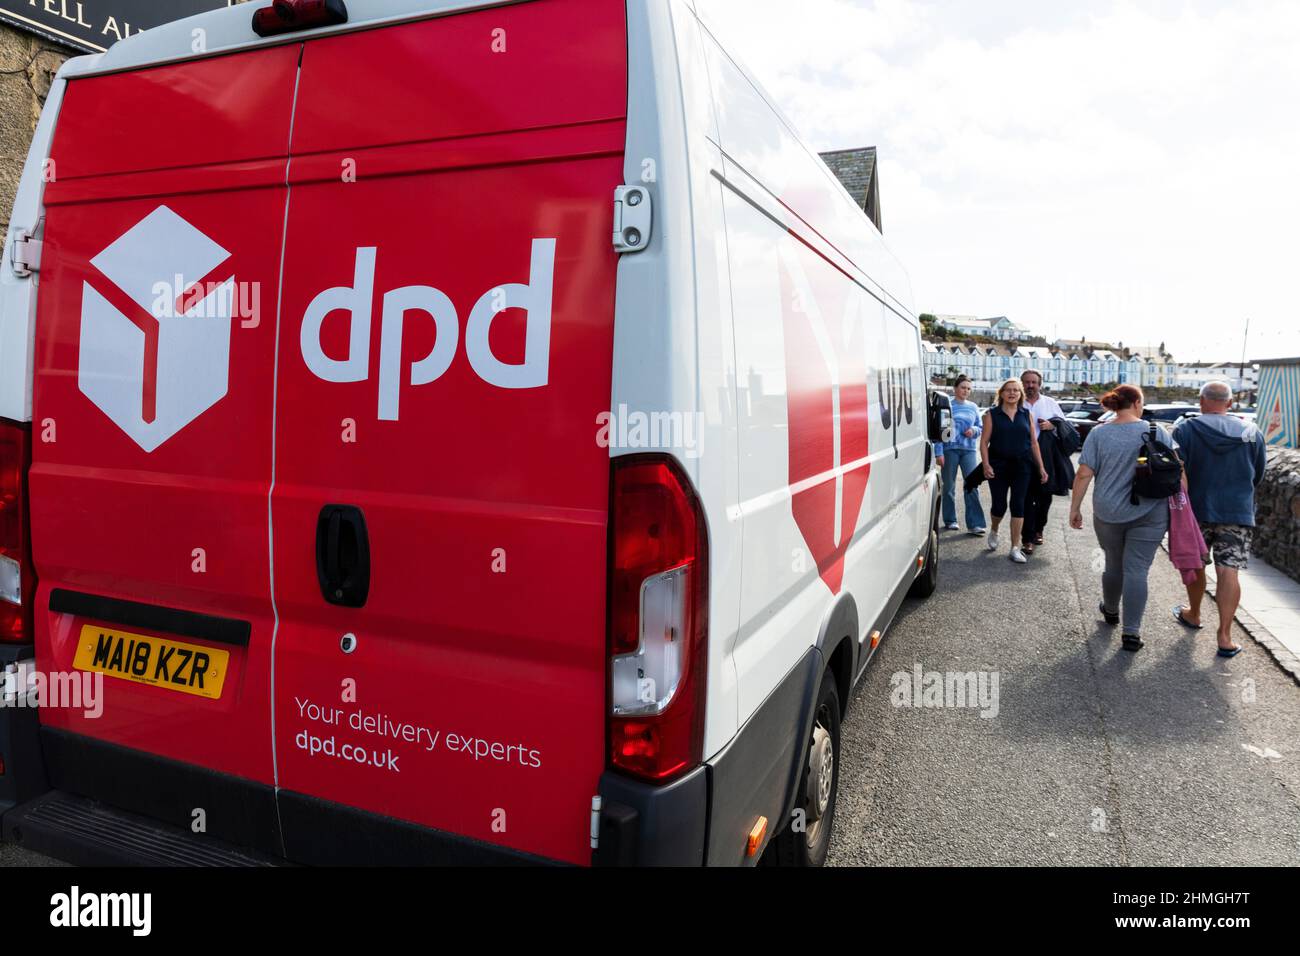 DPD, livraison DPD, fourgon DPD, fourgon de livraison DPD, panneau DPD, Logo DPD, véhicule DPD, symbole DPD, livraison de colis DPD, livraison, Logistique DPD, logistique, Banque D'Images